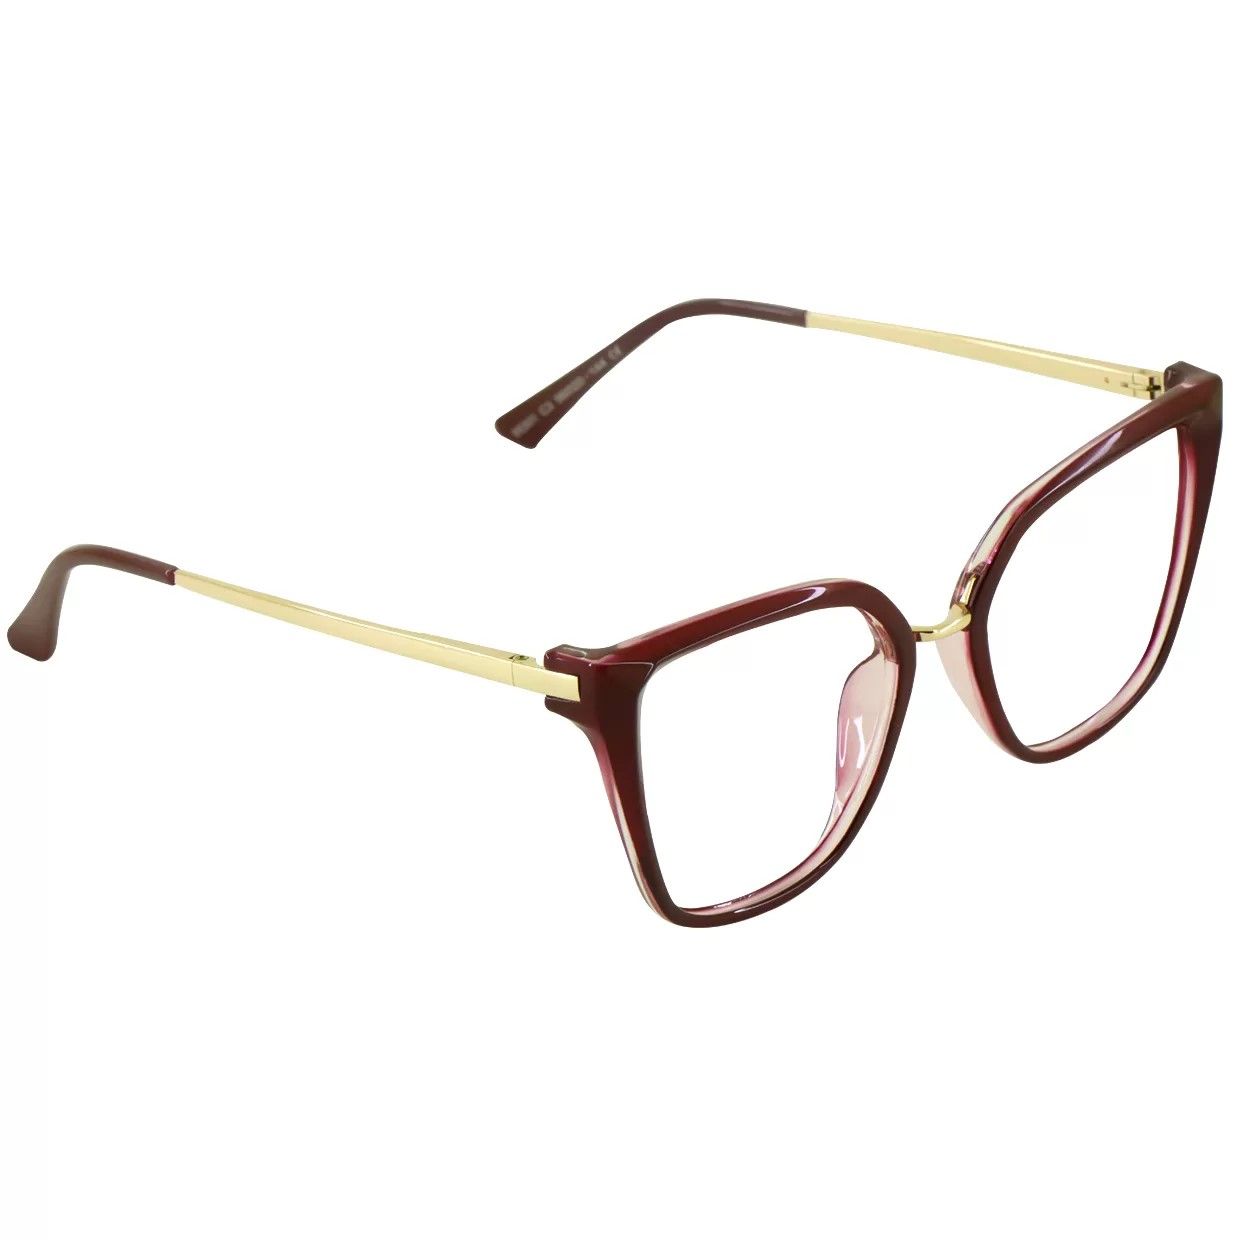 فریم عینک طبی گودلوک مدل 95301 -  - 2